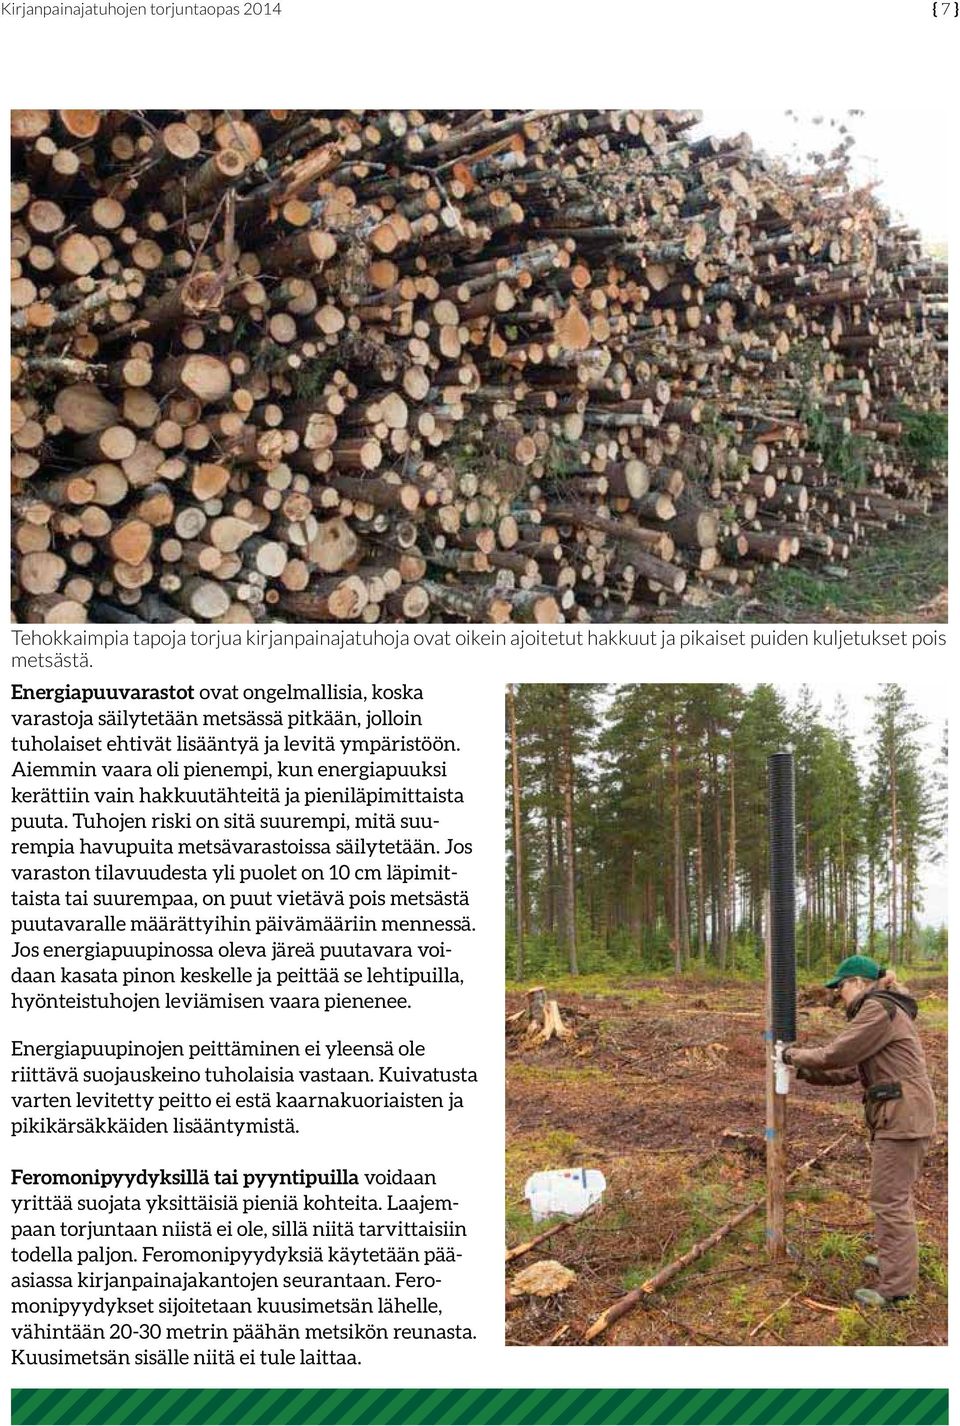 Aiemmin vaara oli pienempi, kun energiapuuksi kerättiin vain hakkuutähteitä ja pieniläpimittaista puuta. Tuhojen riski on sitä suurempi, mitä suurempia havupuita metsävarastoissa säilytetään.